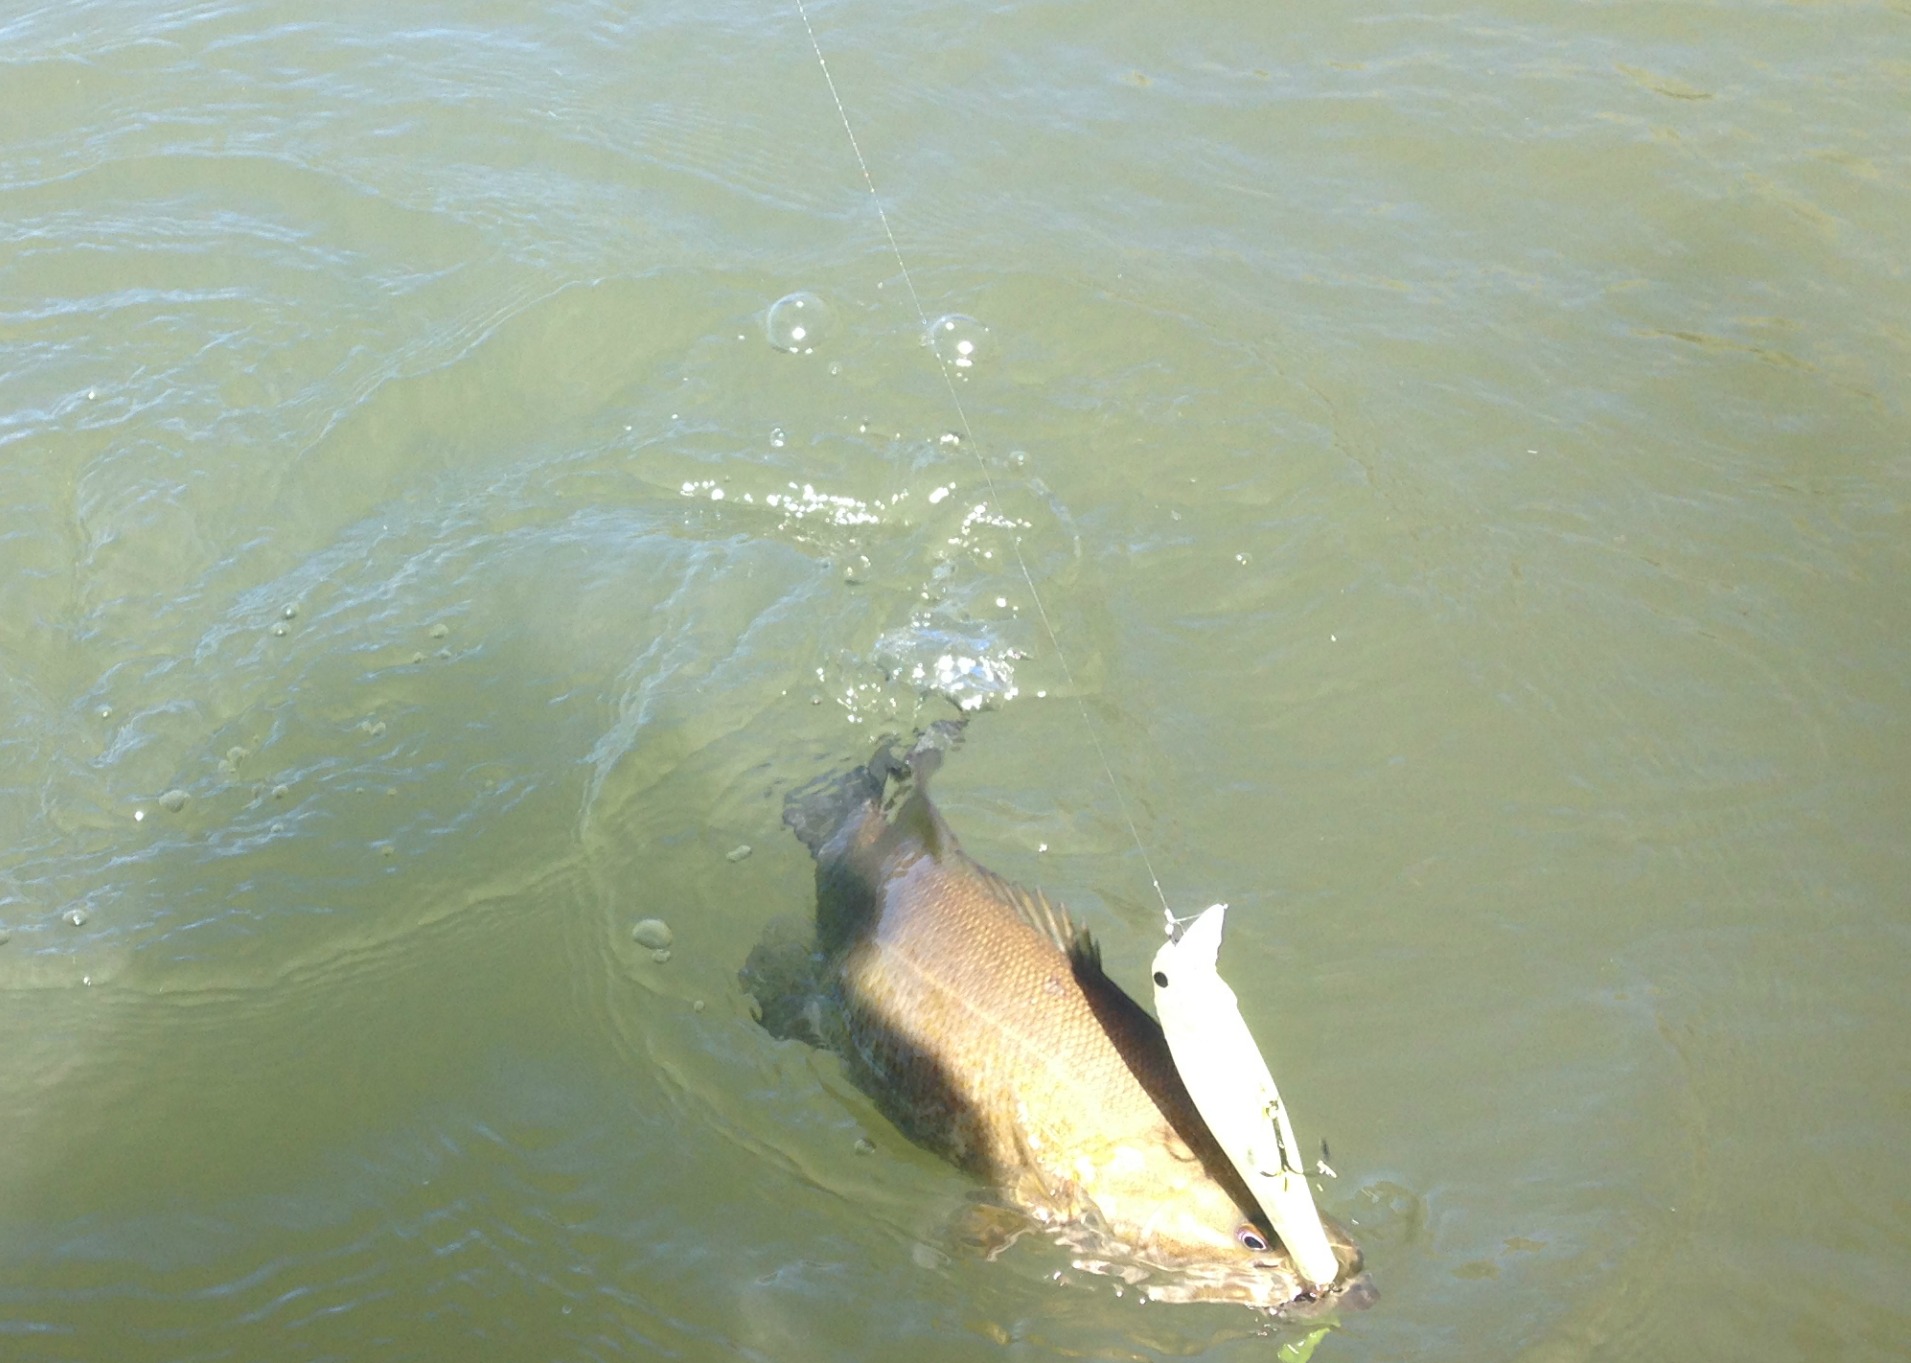 water clarity guide for choosing baits bass fishing